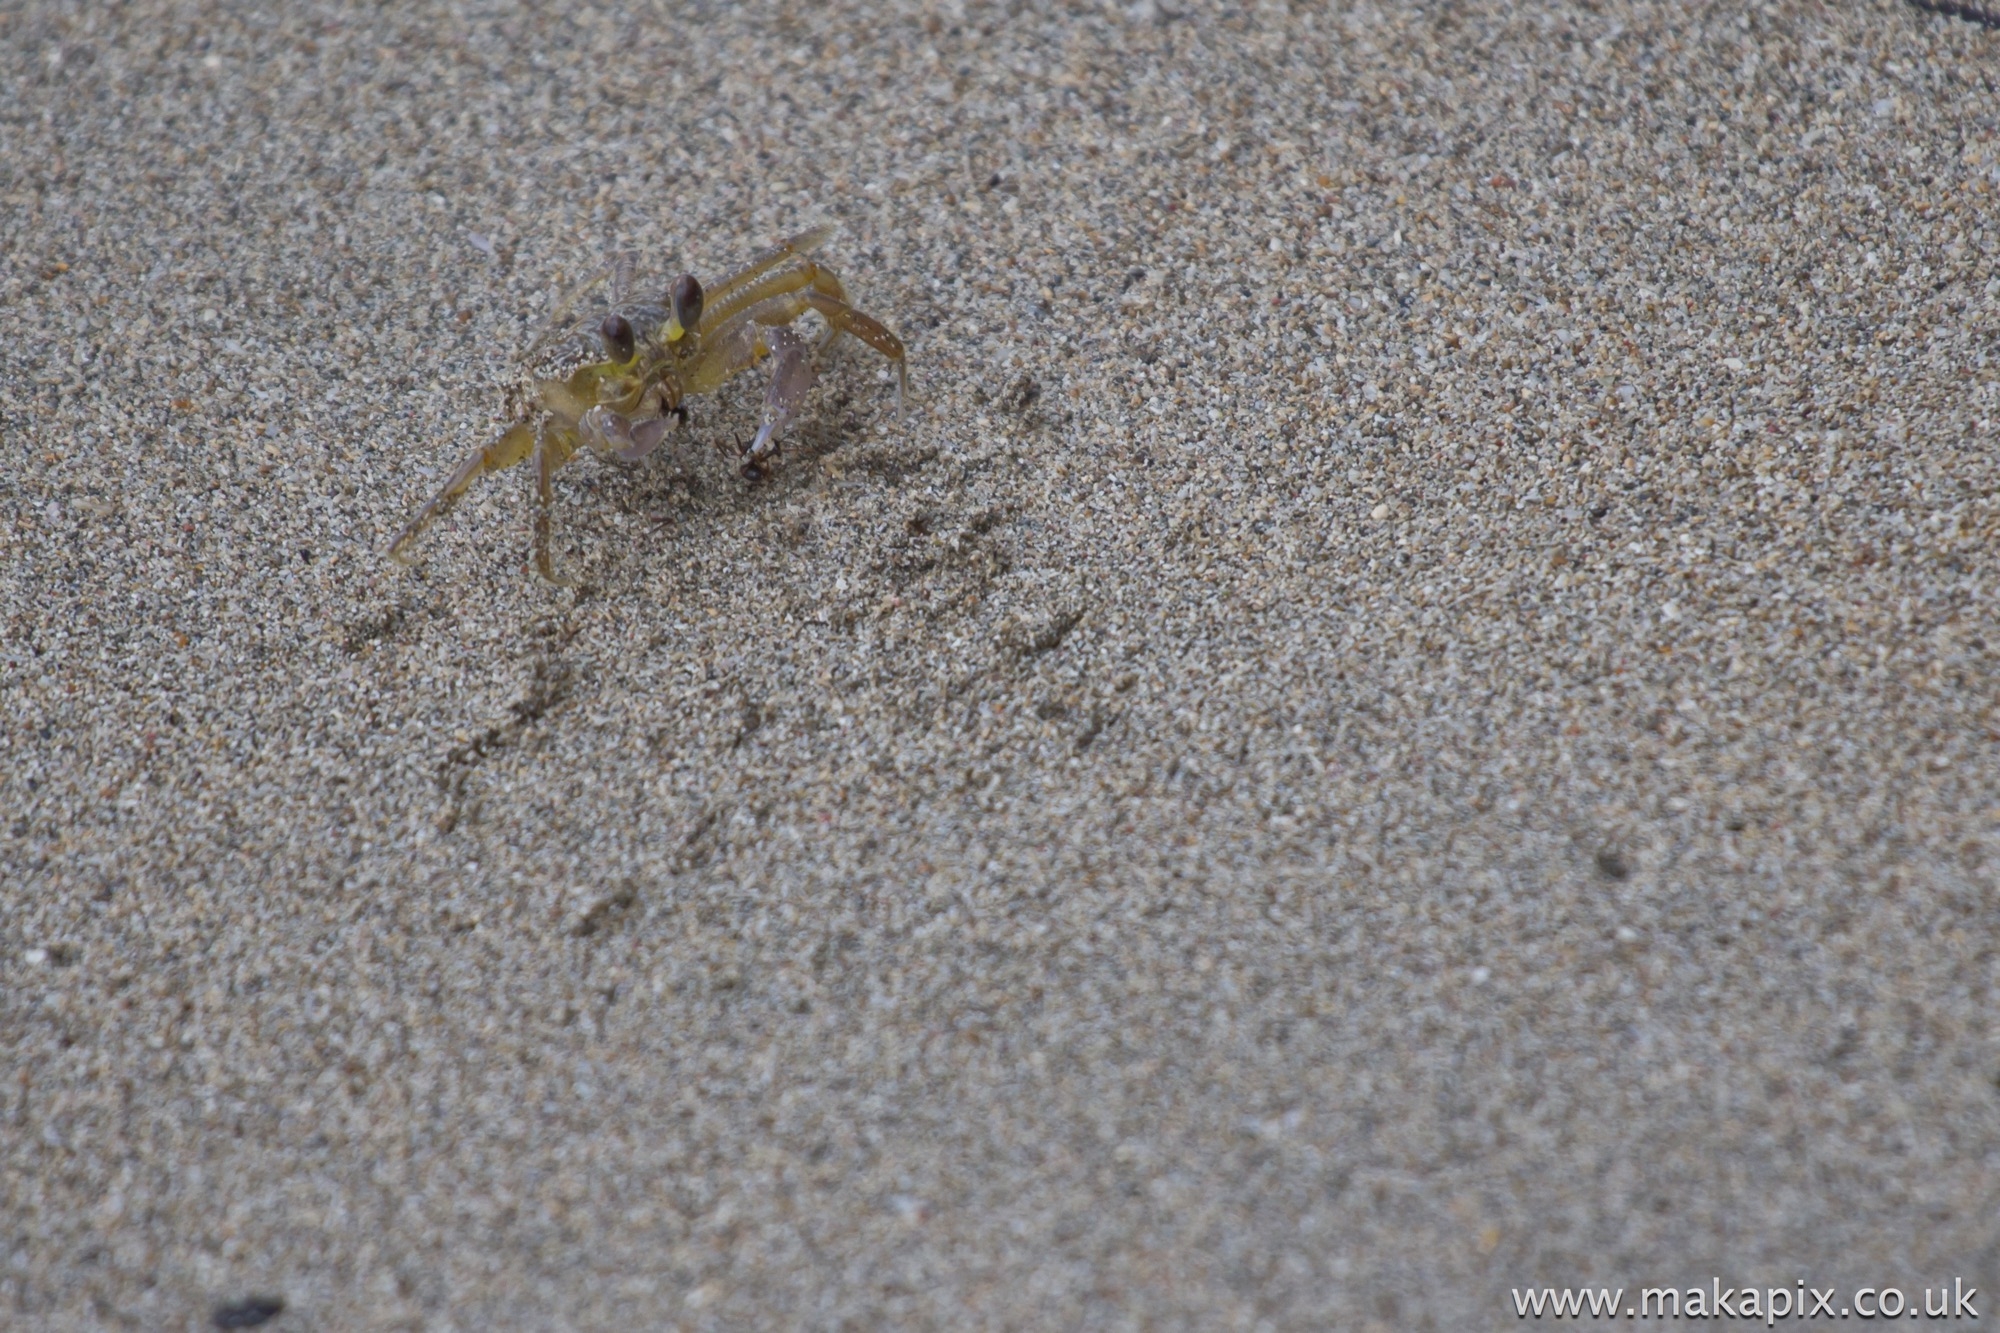 Crab, Costa Rica 2014